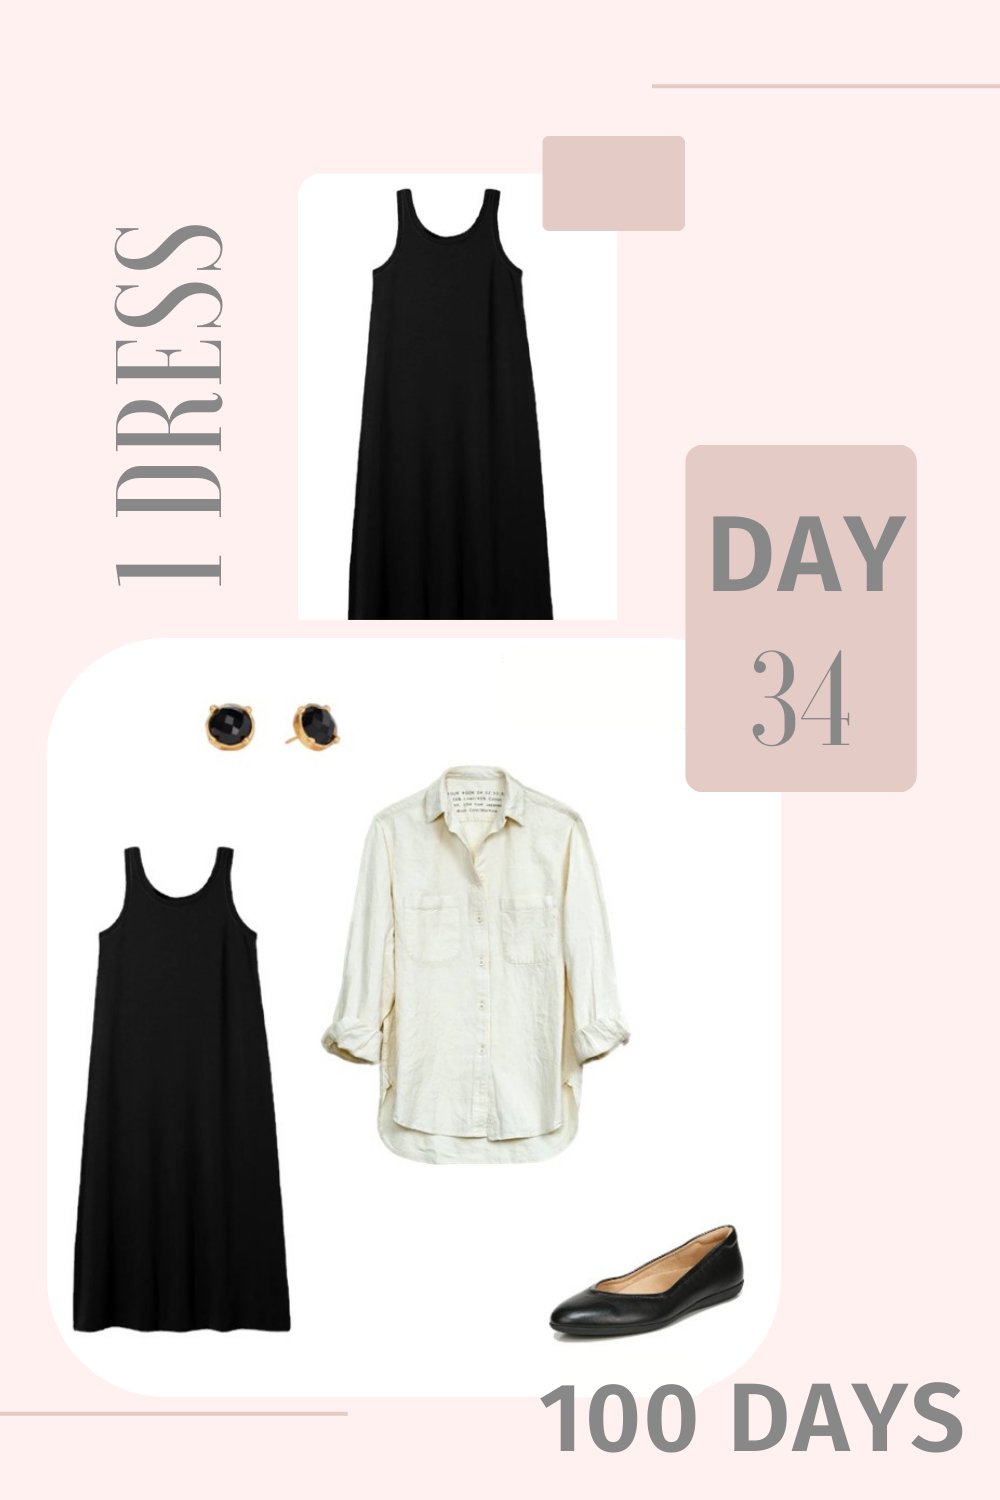 1 Dress 100 Days - Day 34